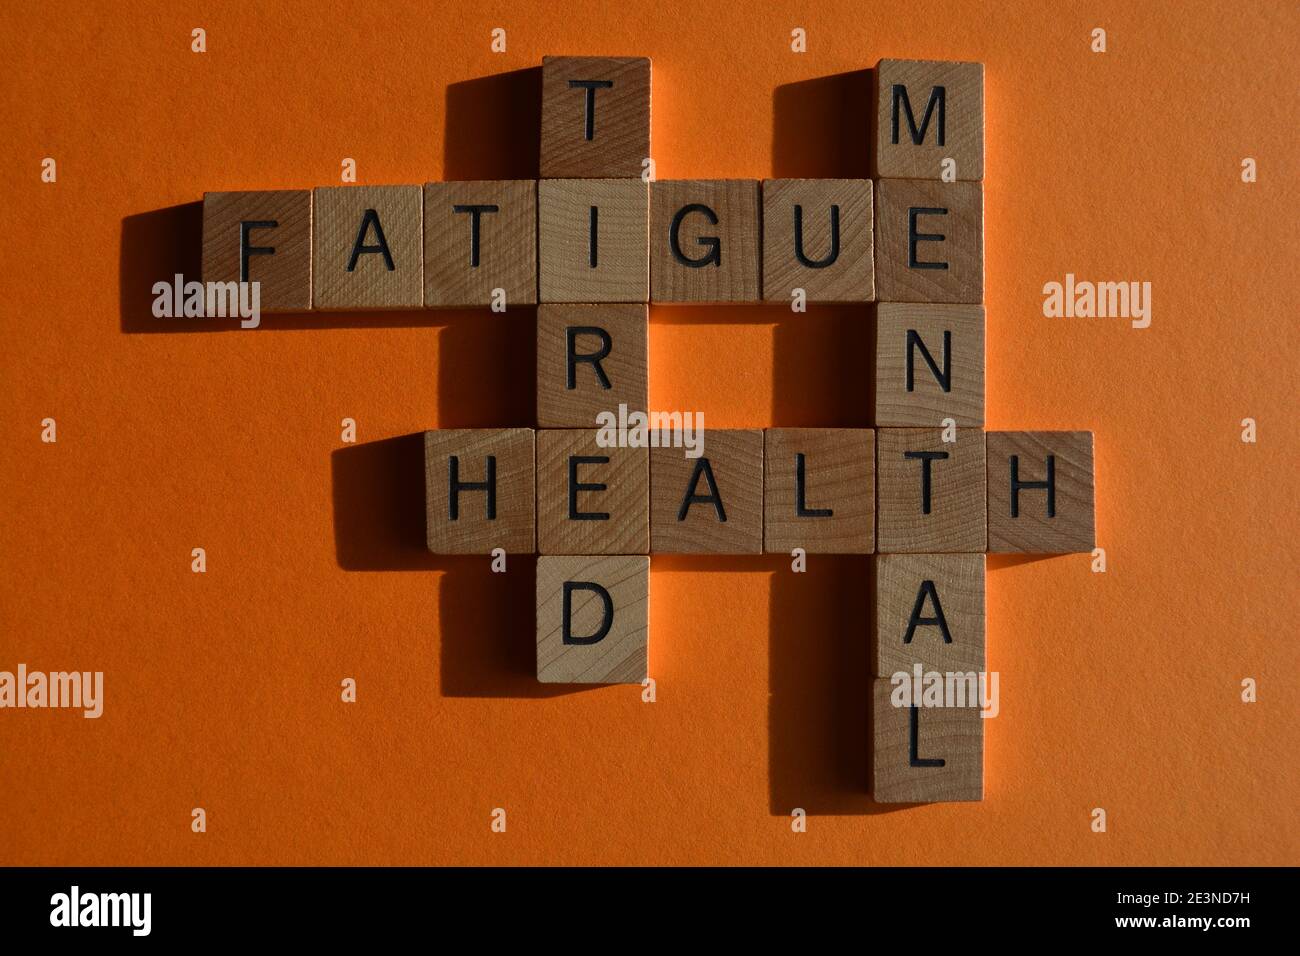 Mental, Health, fatigue, fatigue, mots en lettres de l'alphabet en mots croisés isolés sur fond orange Banque D'Images